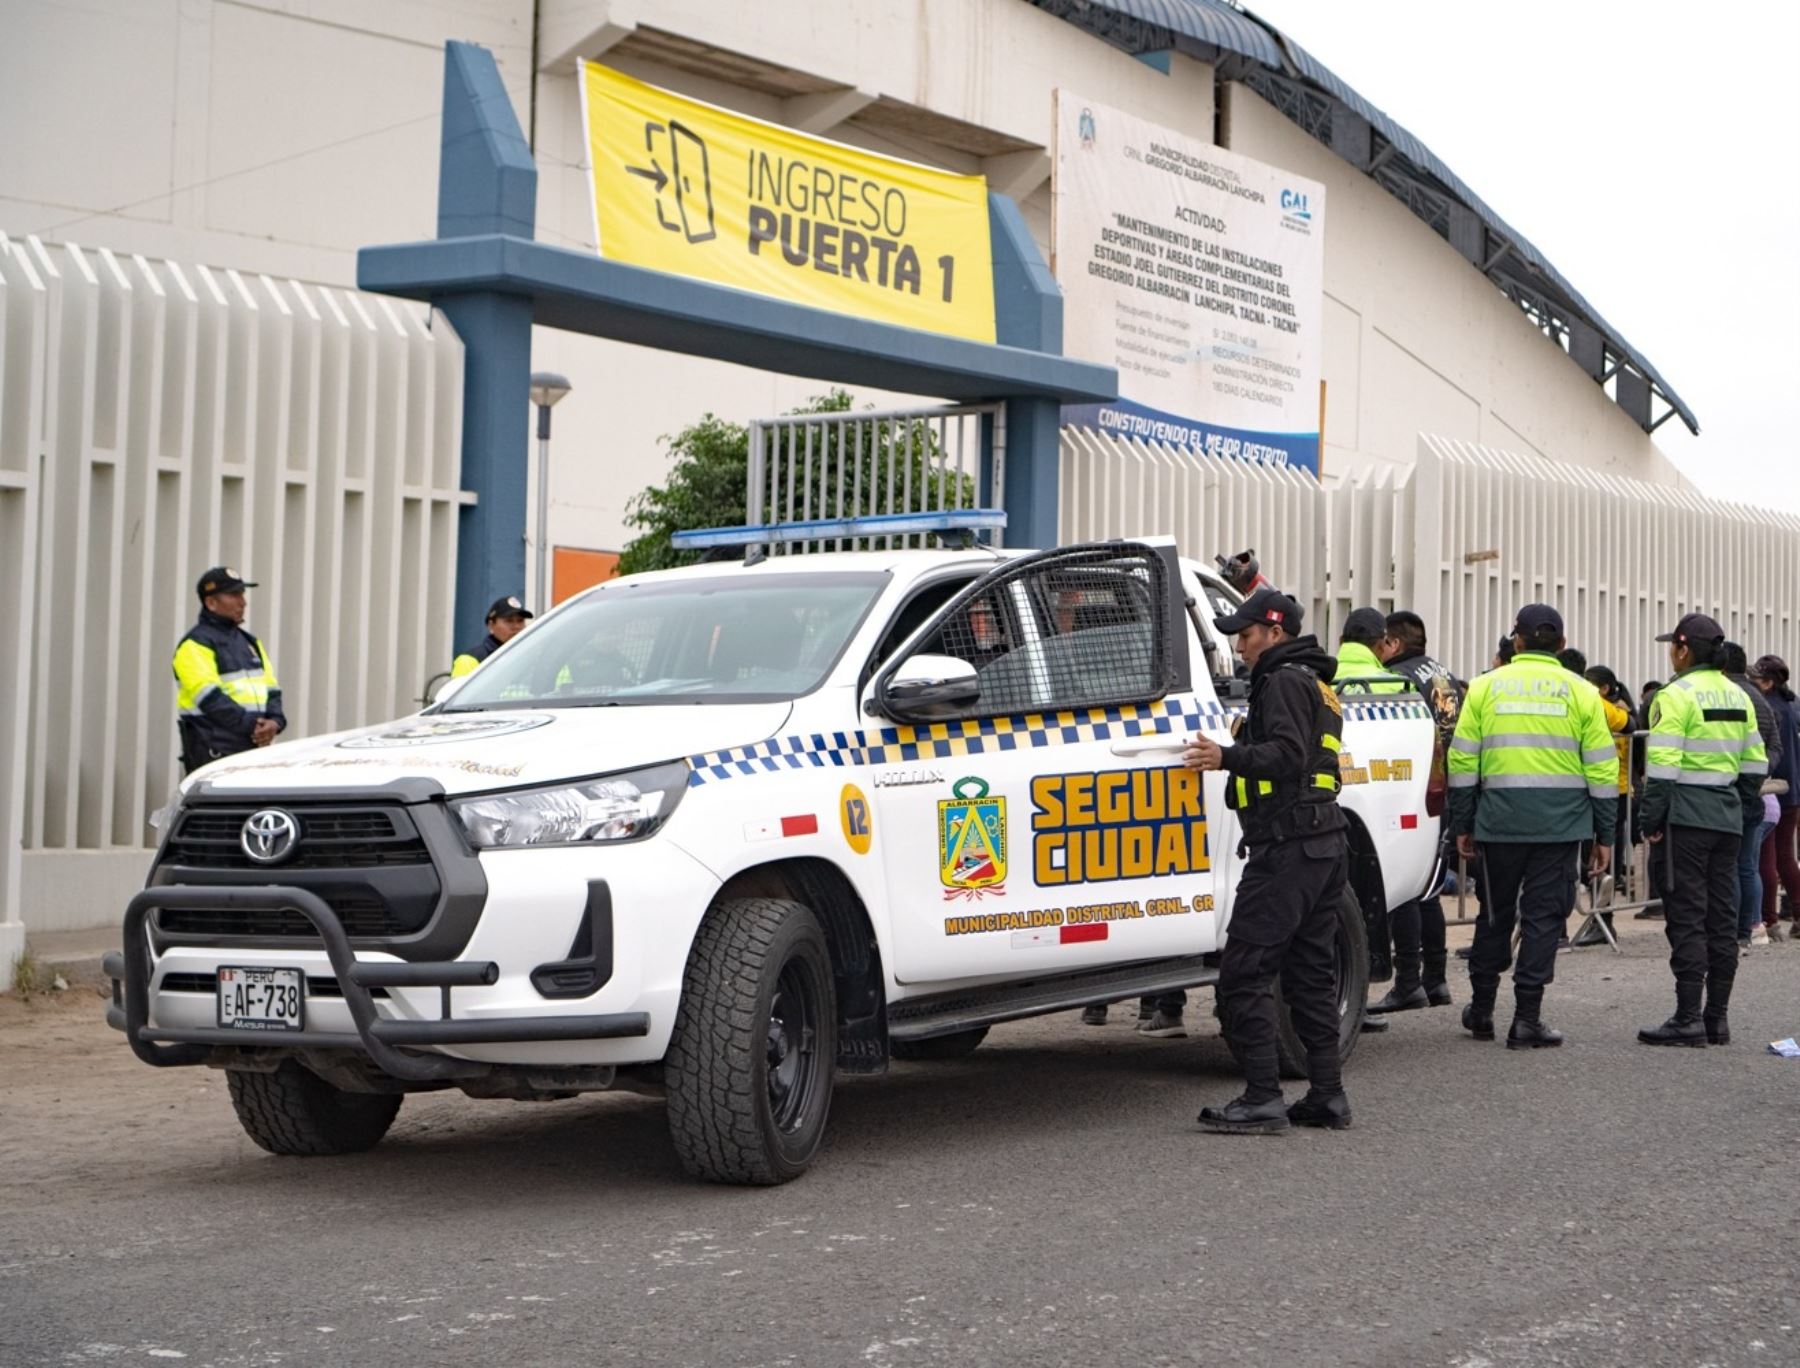 Municipalidad de Gregorio Albarracín responsabilizó a la promotora de espectáculos Chuño.com de la estampida humana ocurrida en ese distrito ubicado en la provincia de Tacna y que dejó 20 heridos.